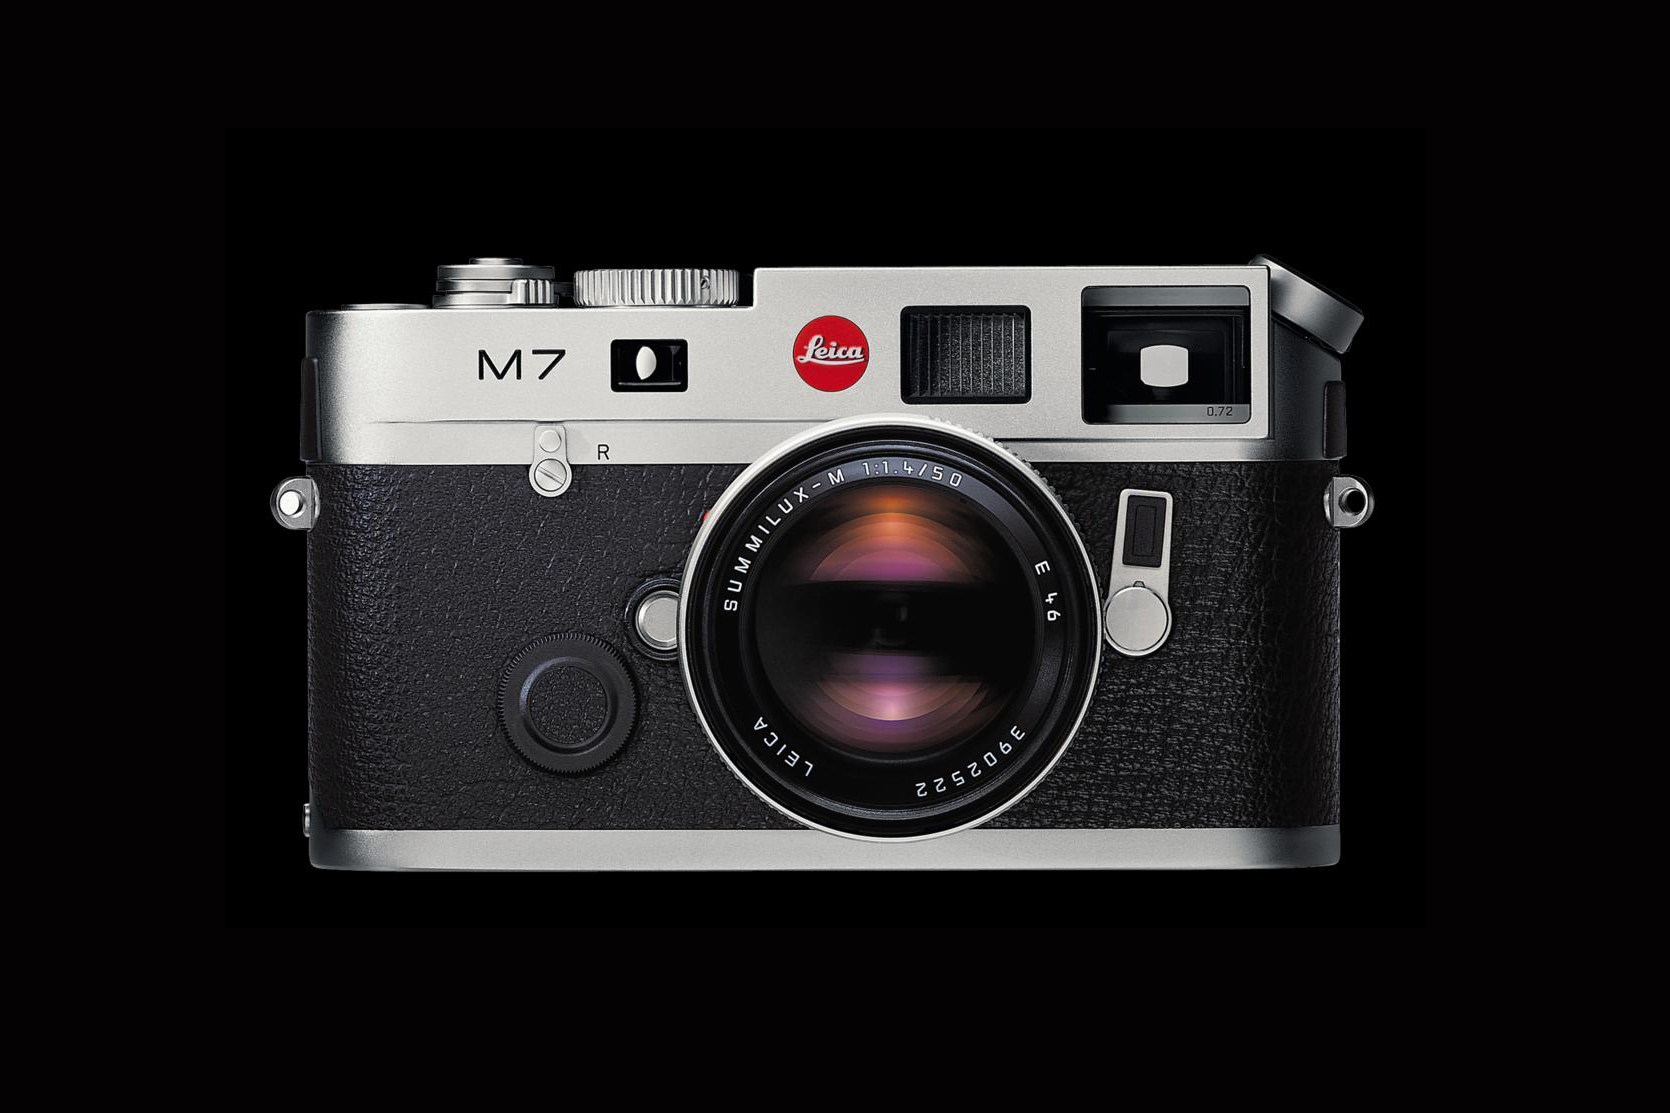 Leica 宣布停产 M7 菲林相机